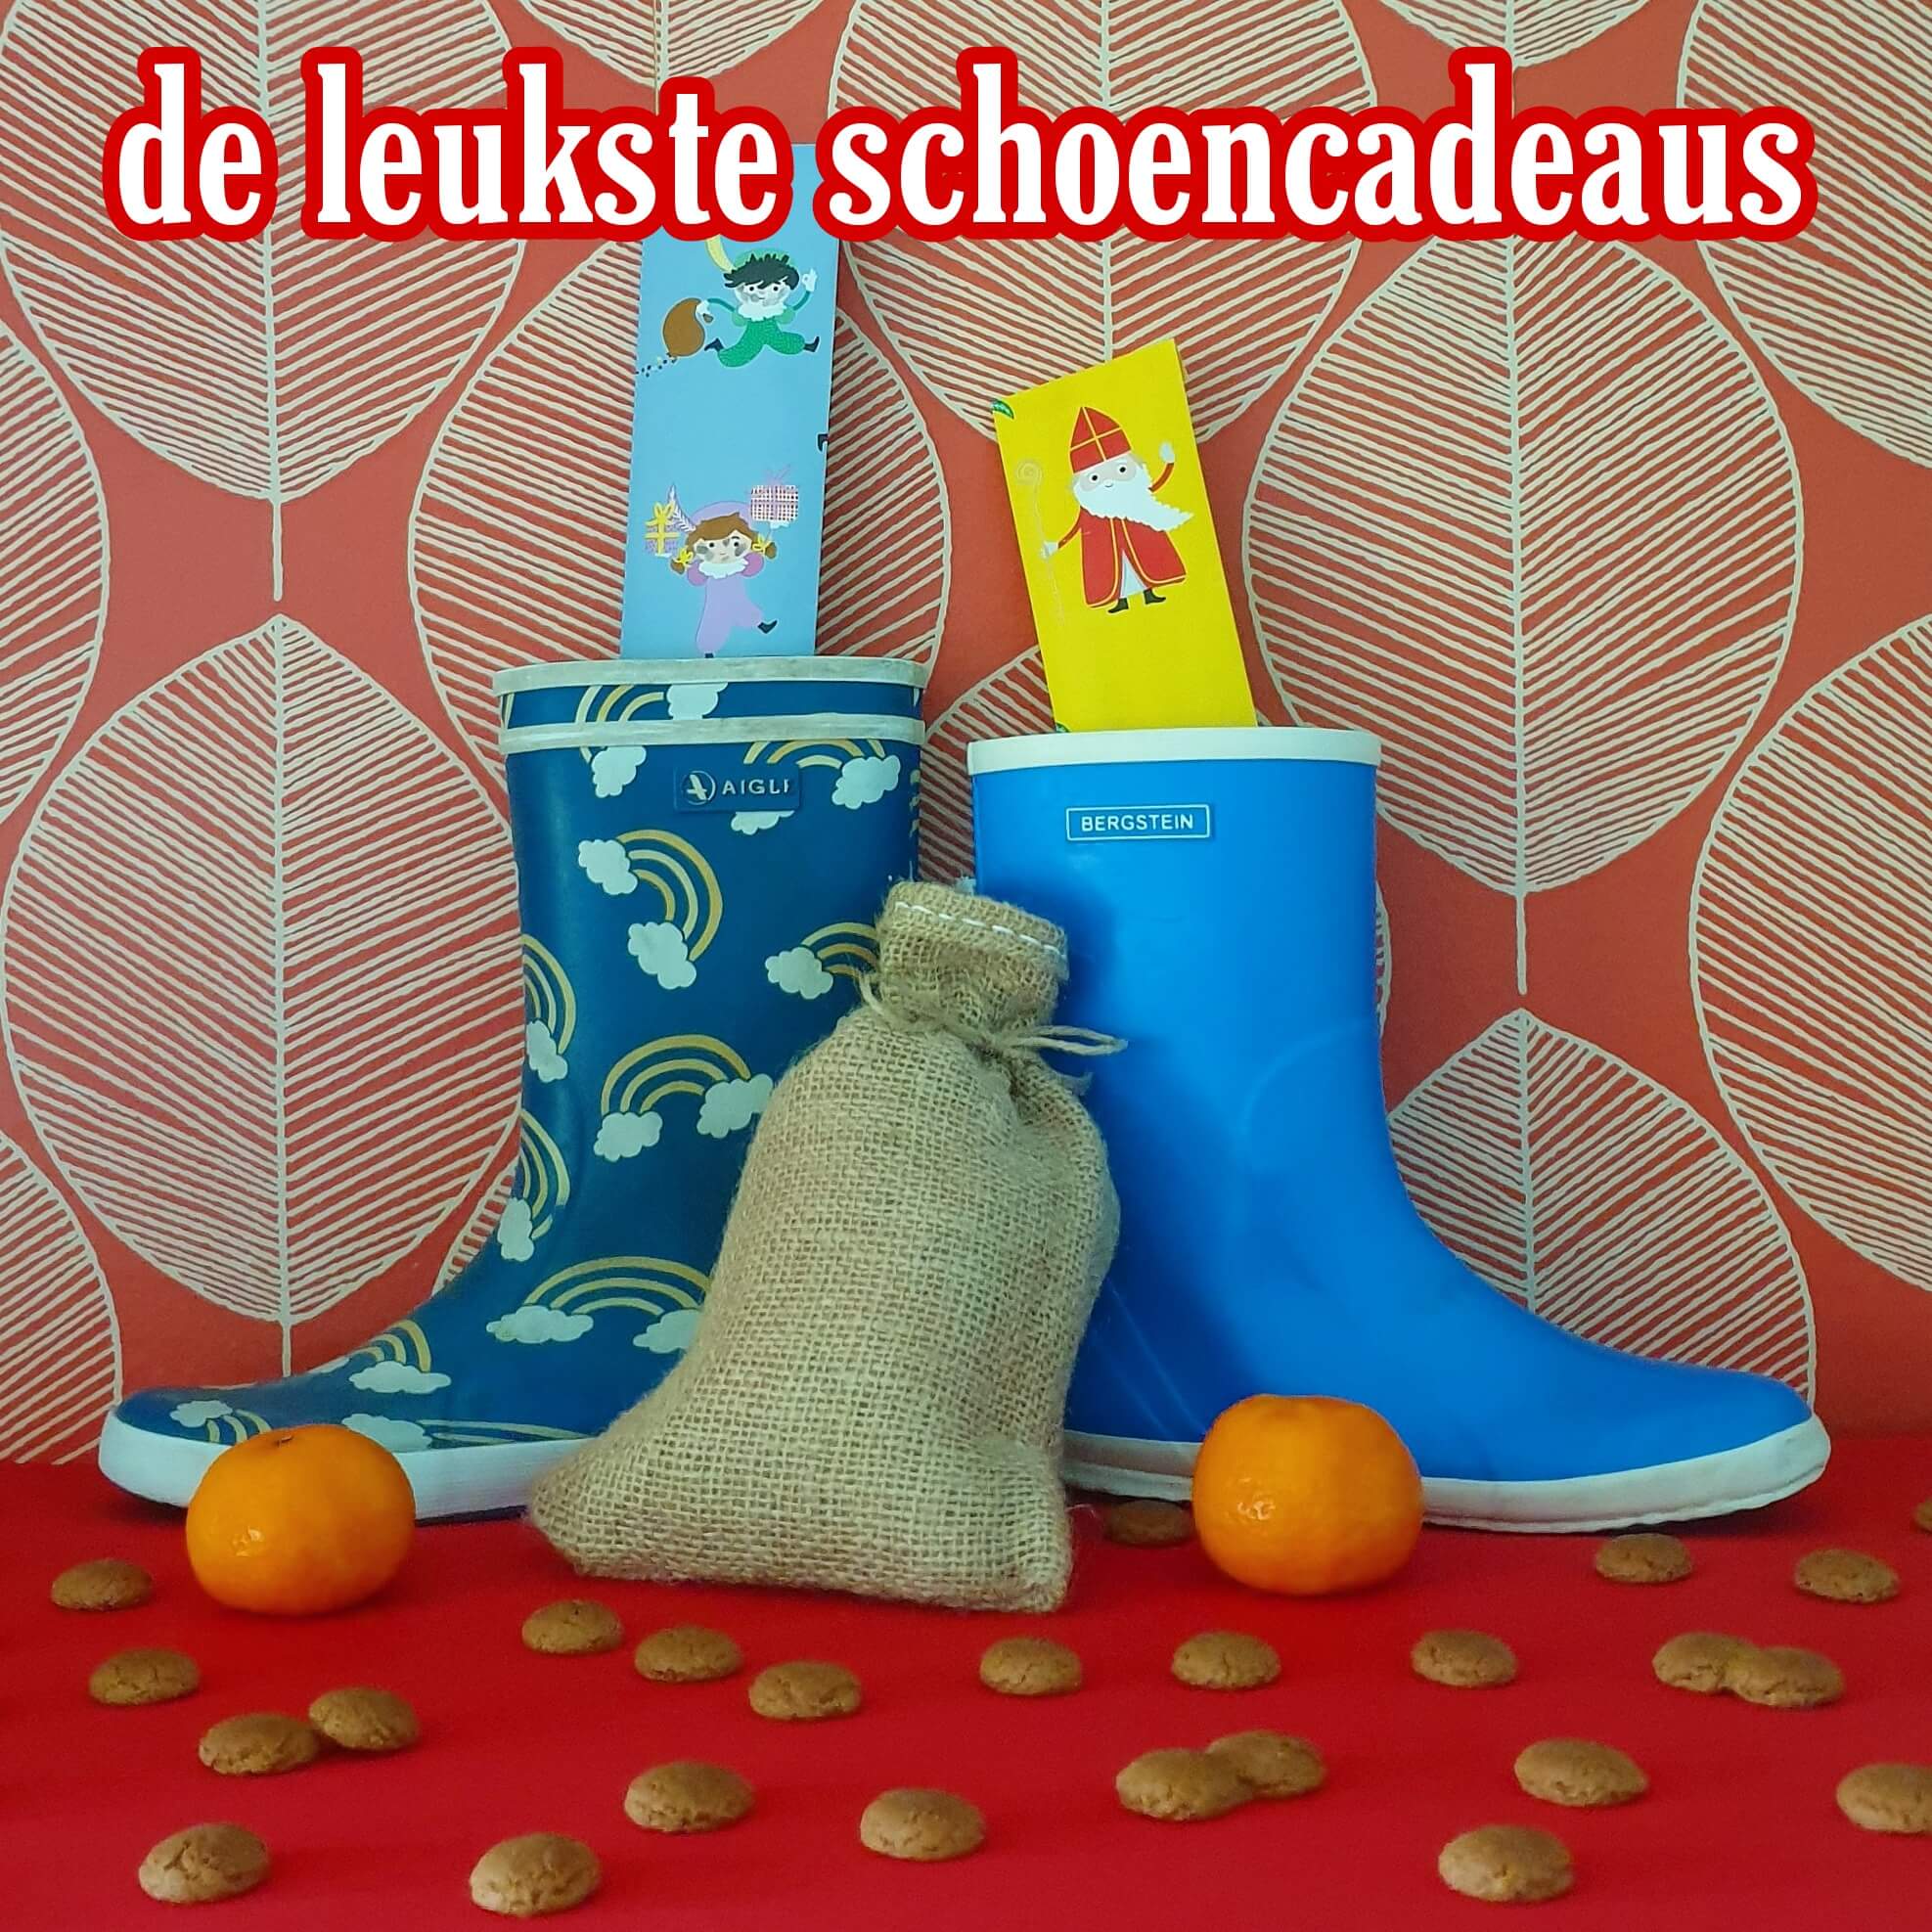 Klagen Zorg JEP De favoriete schoencadeaus van Sinterklaas - Leuk met kids Leuk met kids